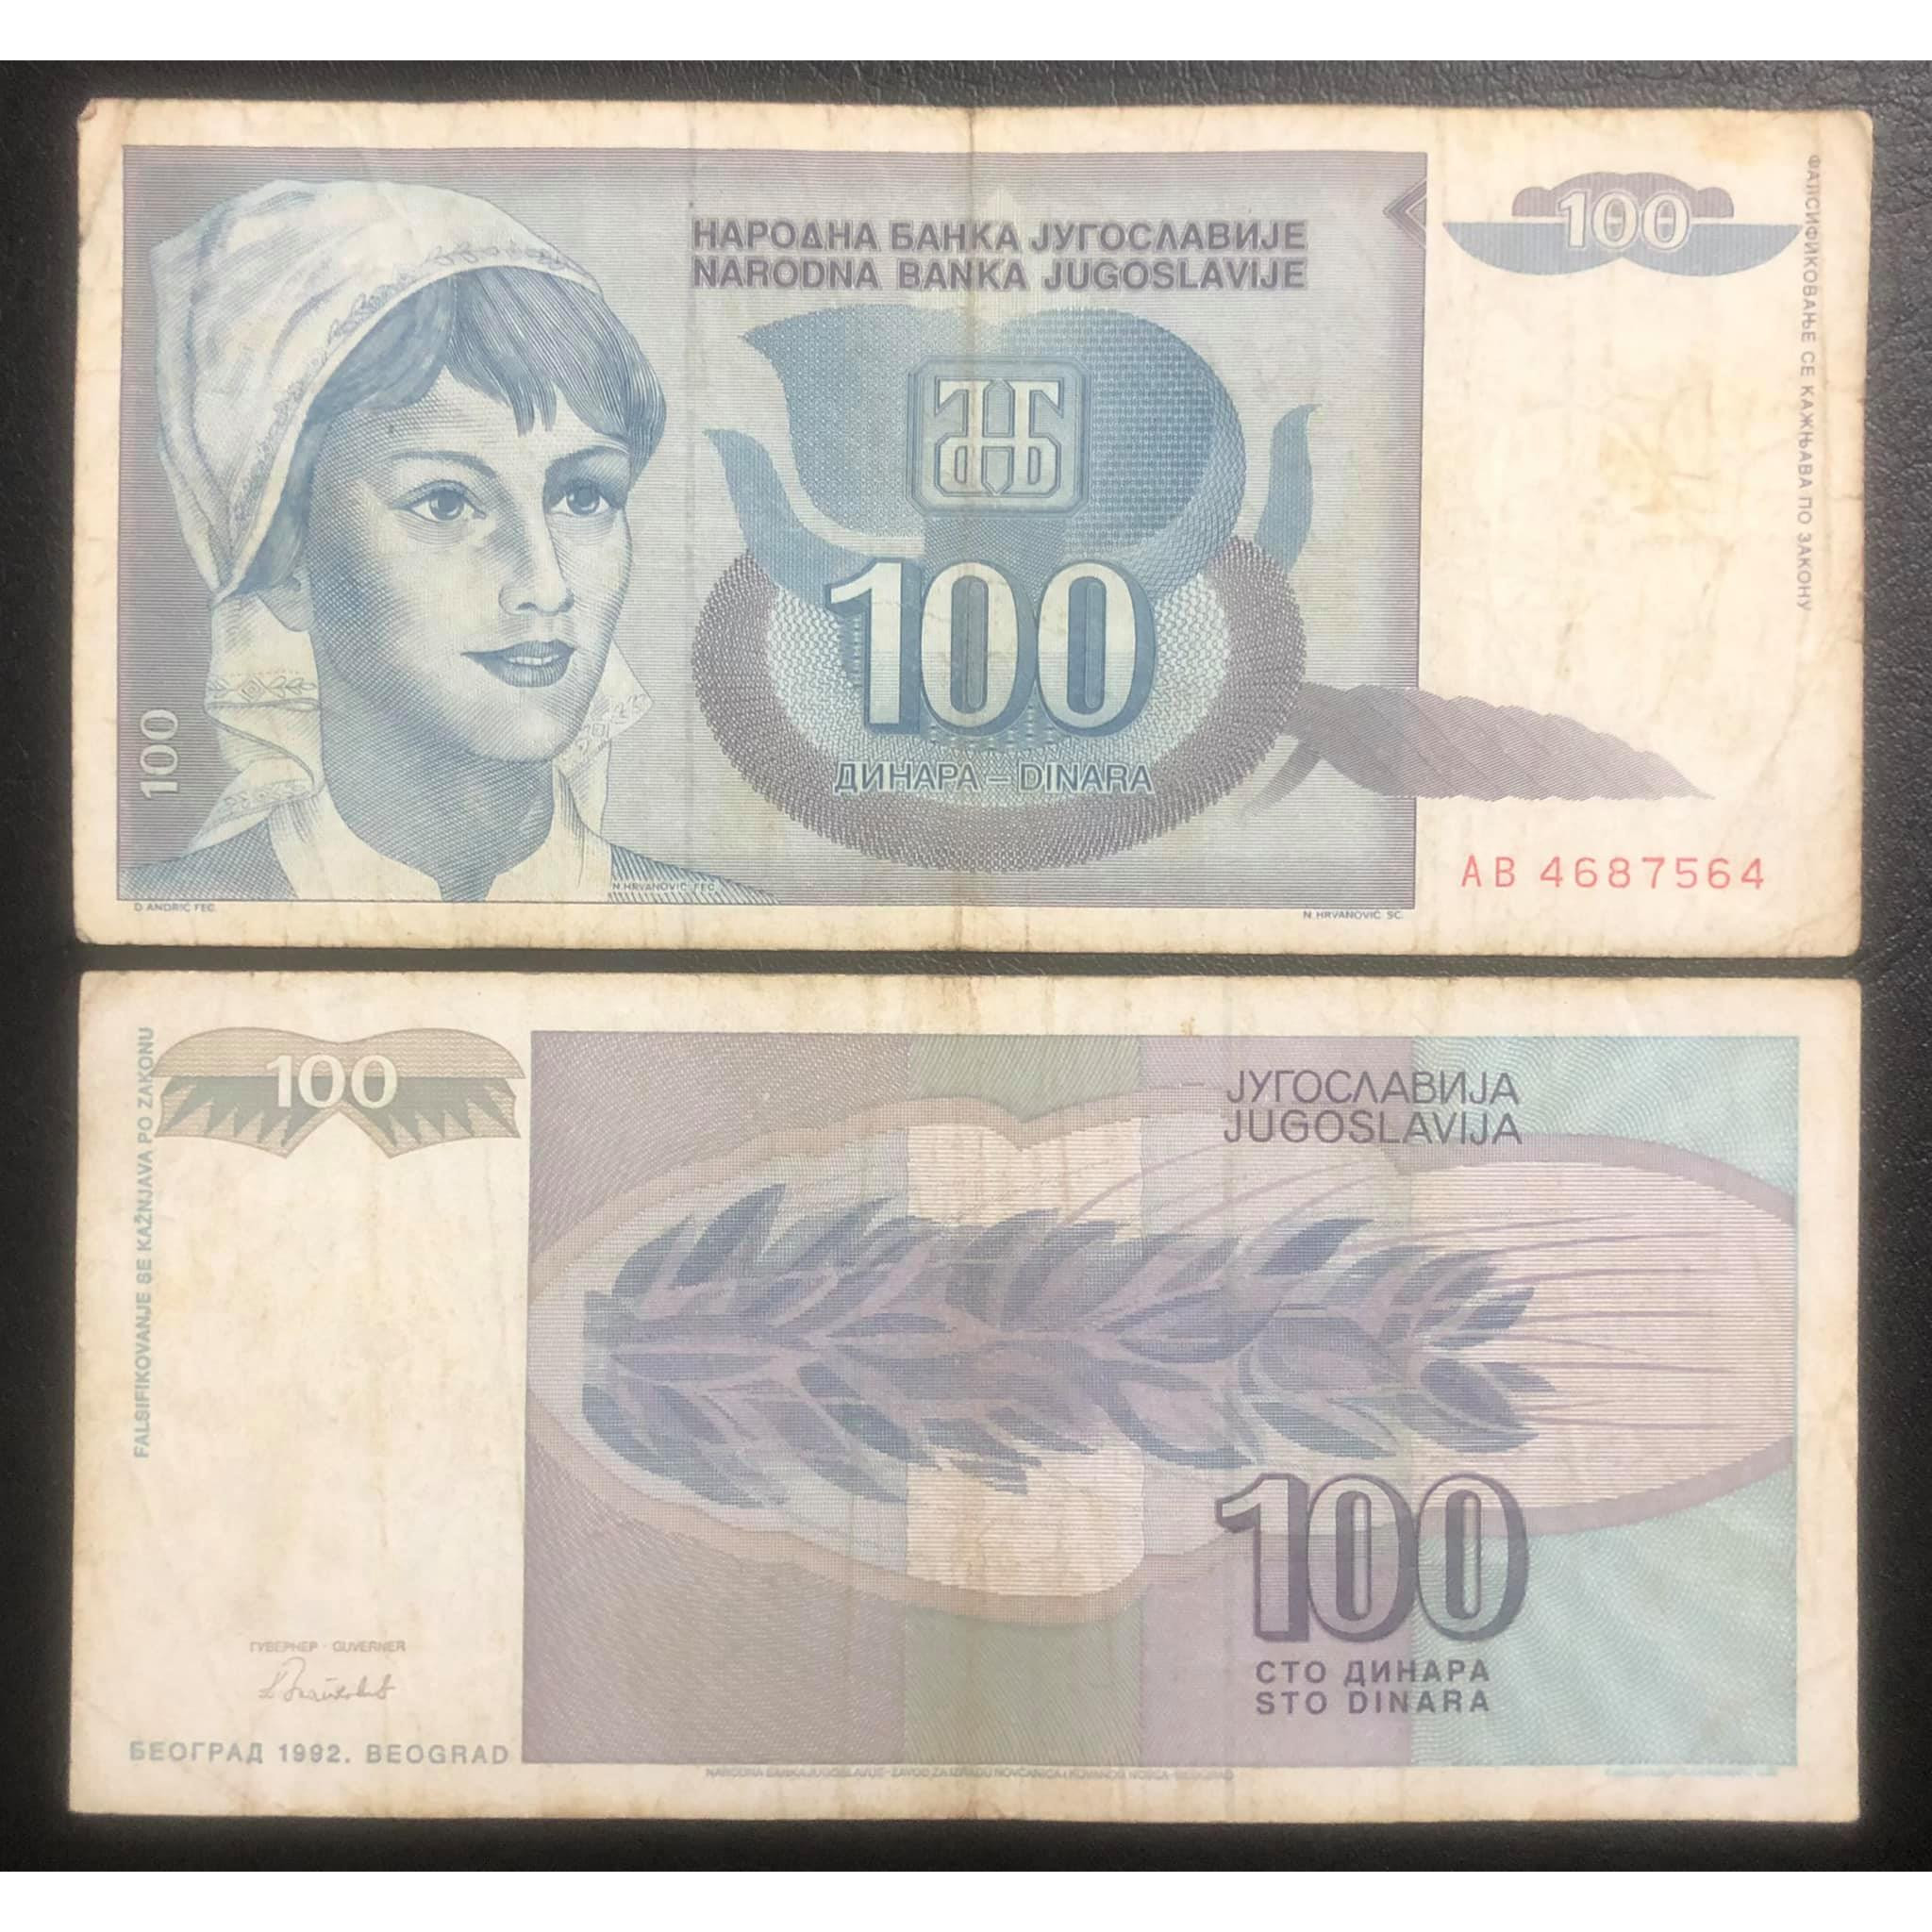 Tiền thế giới 100 dinara của Nam Tư cũ